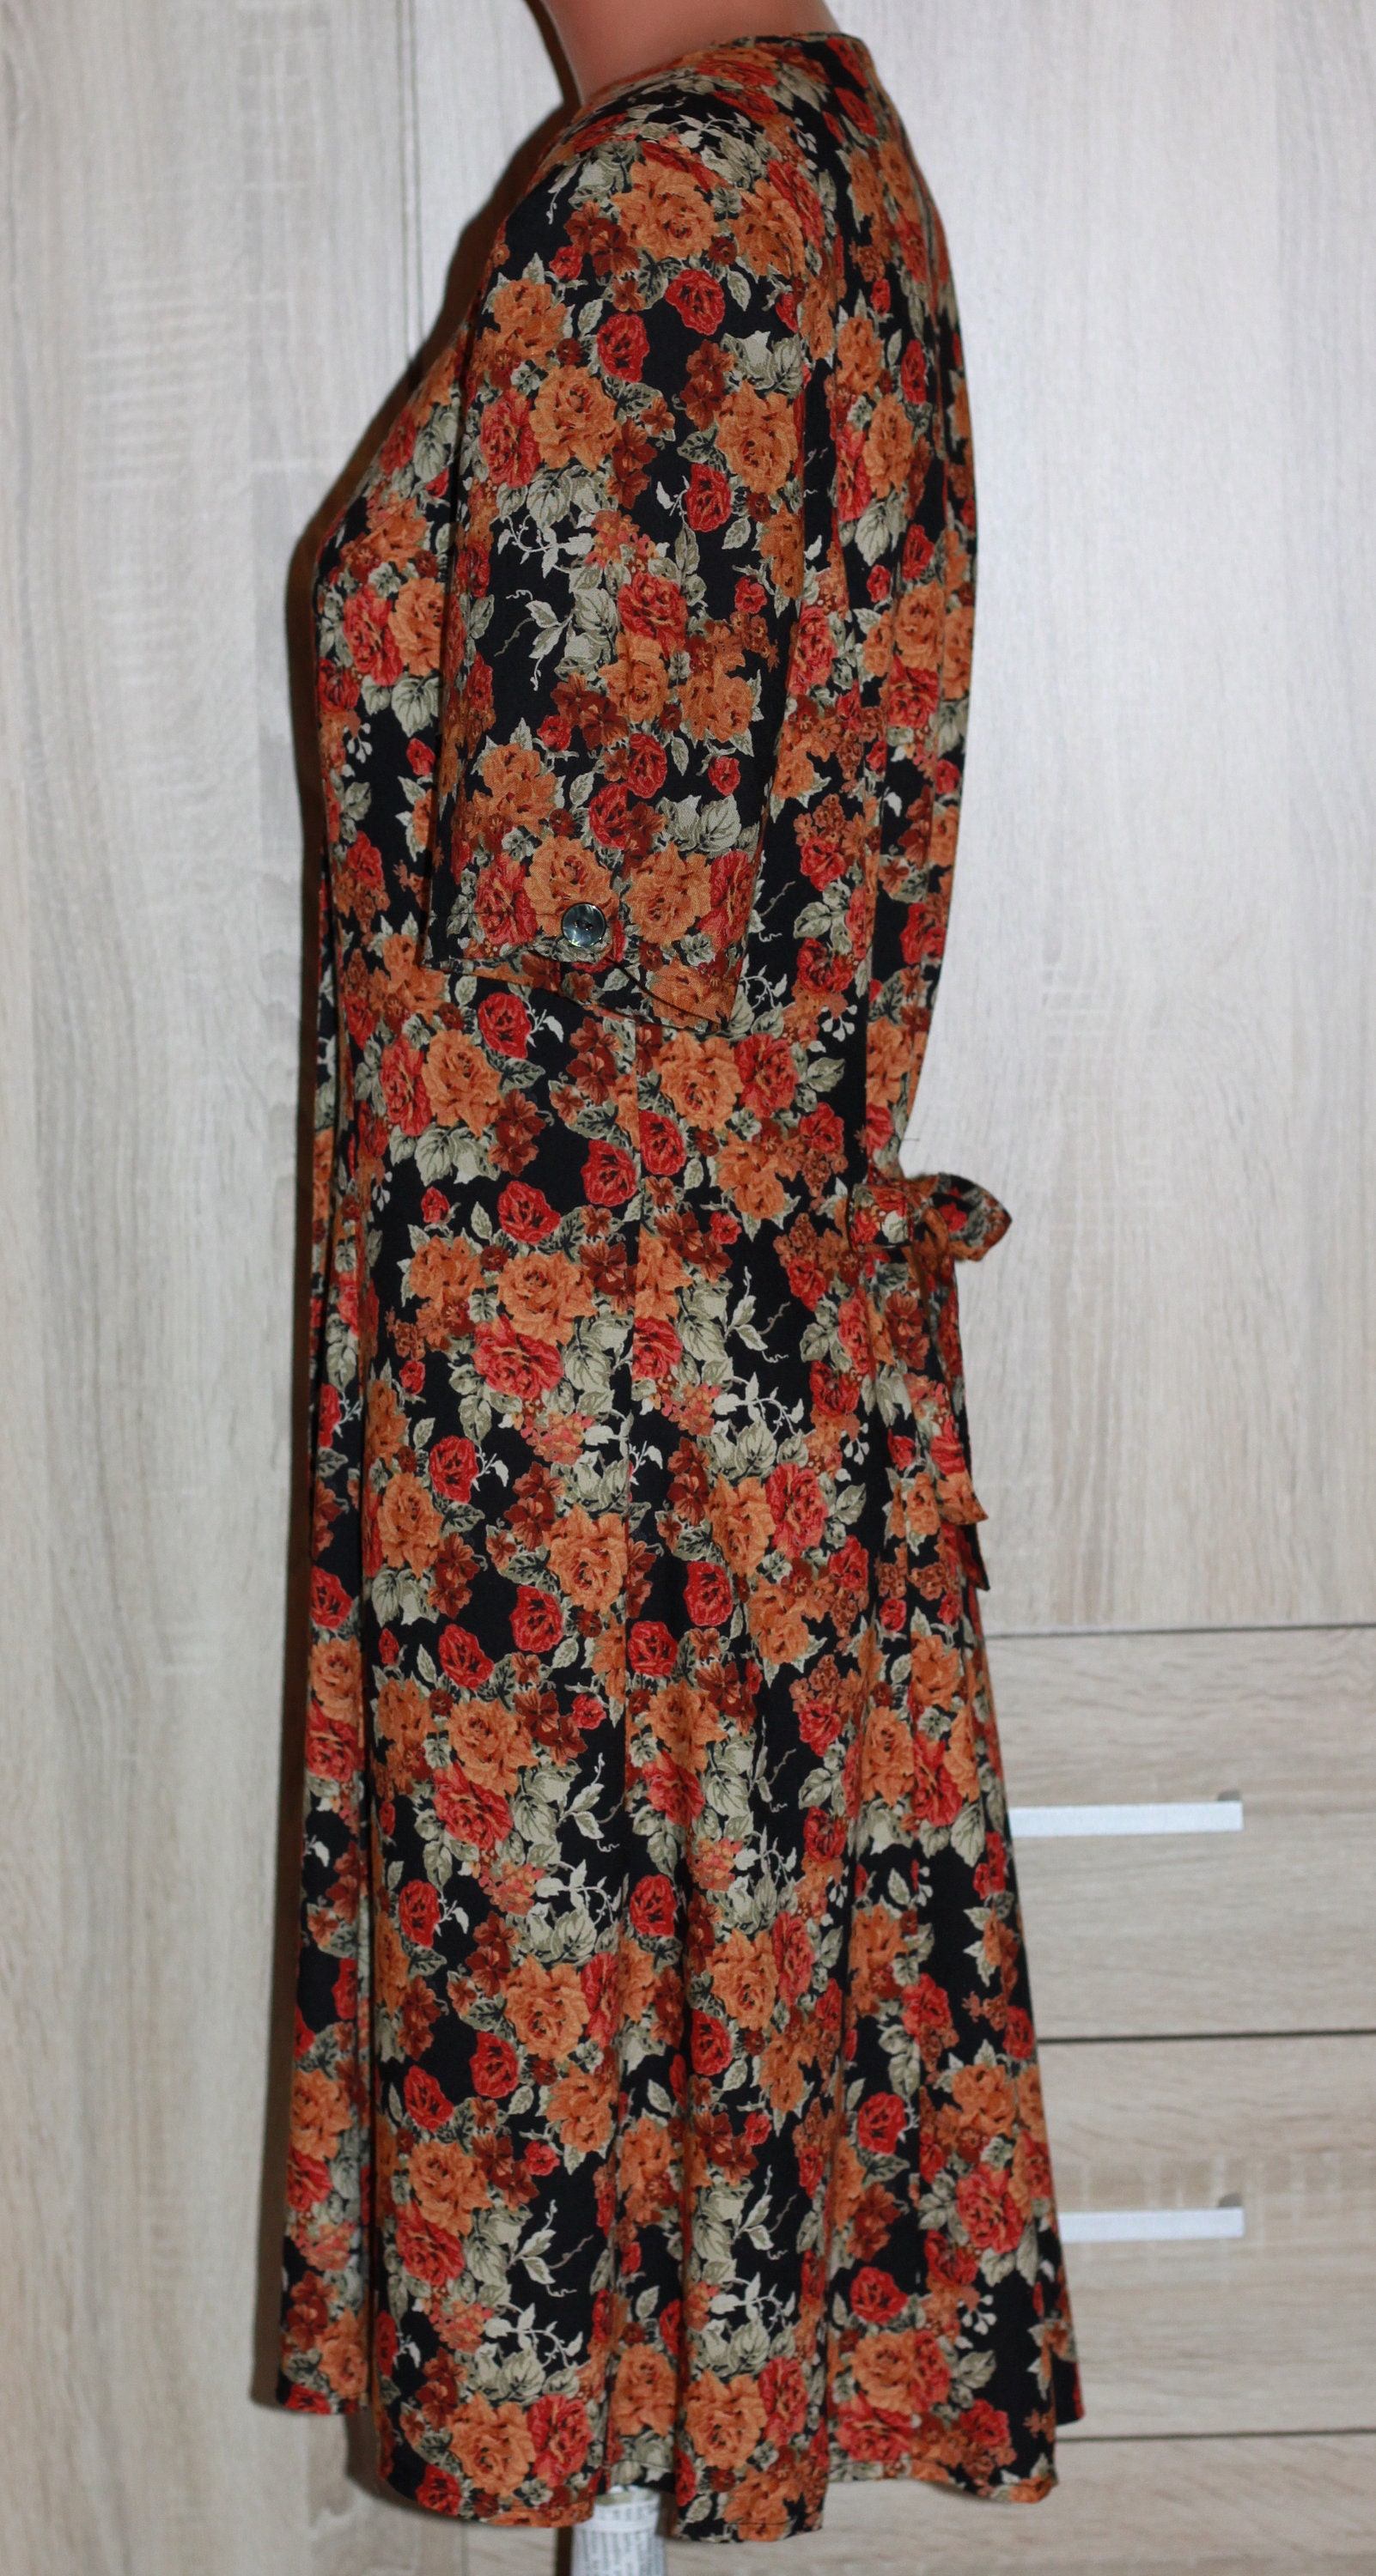 Vintage Black Brovn Floral Print Dress Size M - Etsy